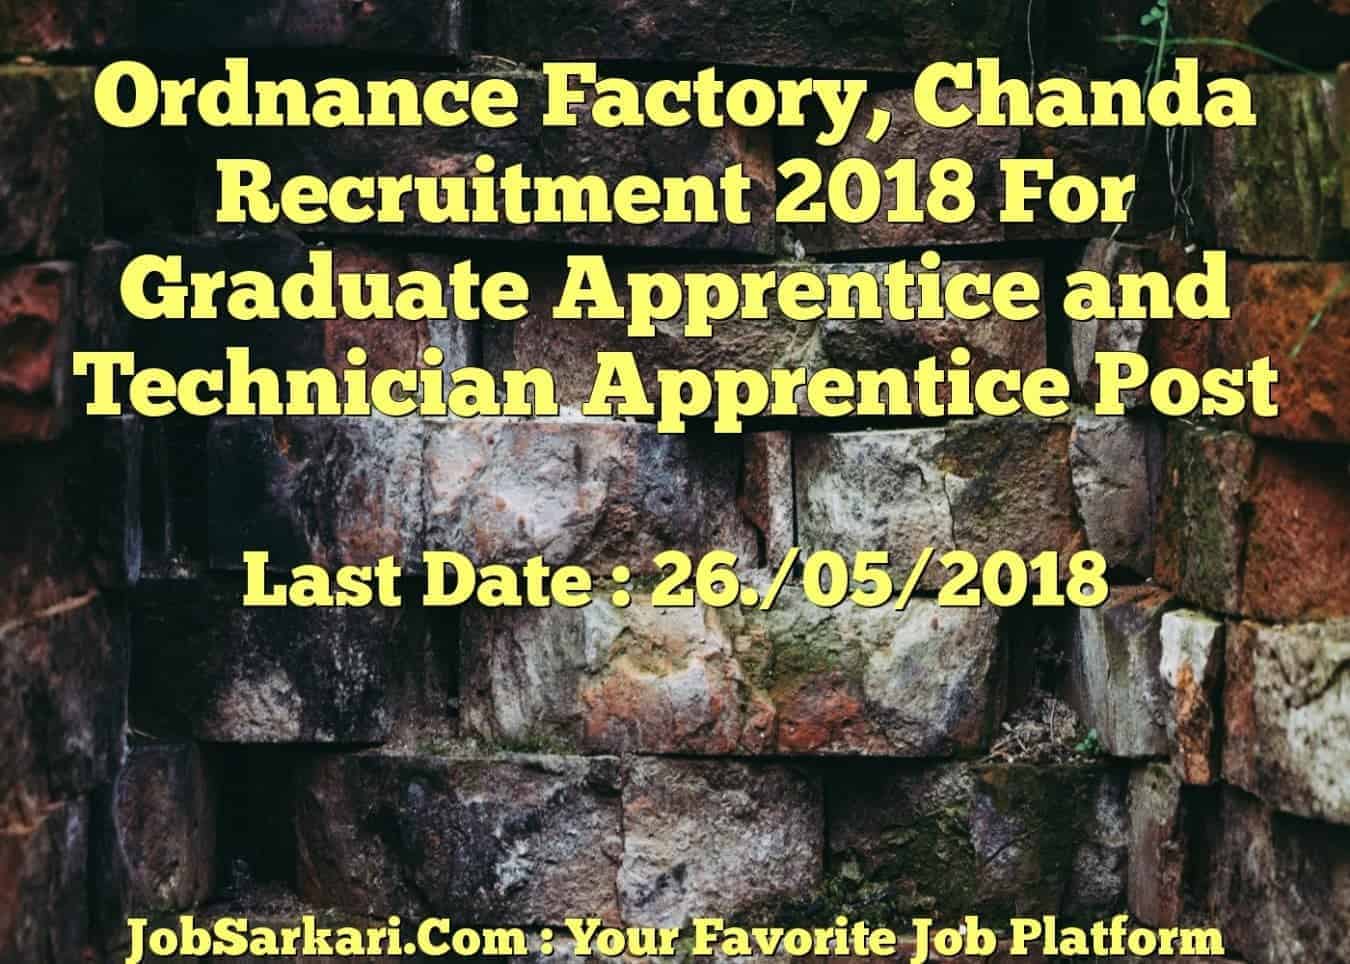 Ordnance Factory, Chanda Recruitment 2018 For Graduate Apprentice and Technician Apprentice Post